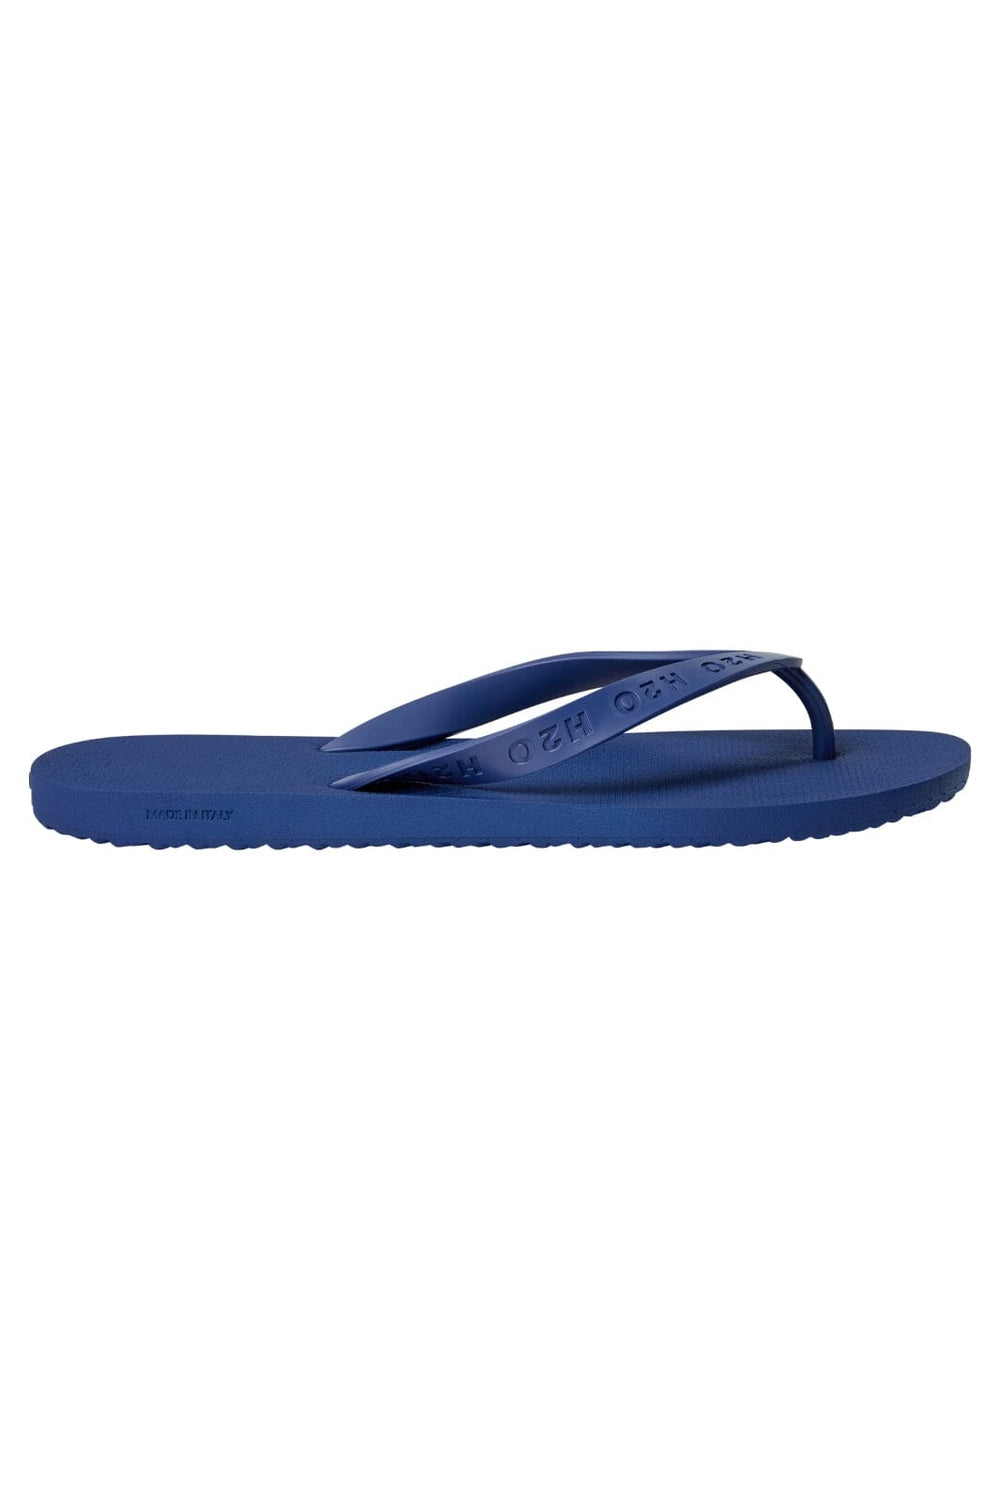 H2O - Flip Flop - 2506 Indigo Blue Sandaler 